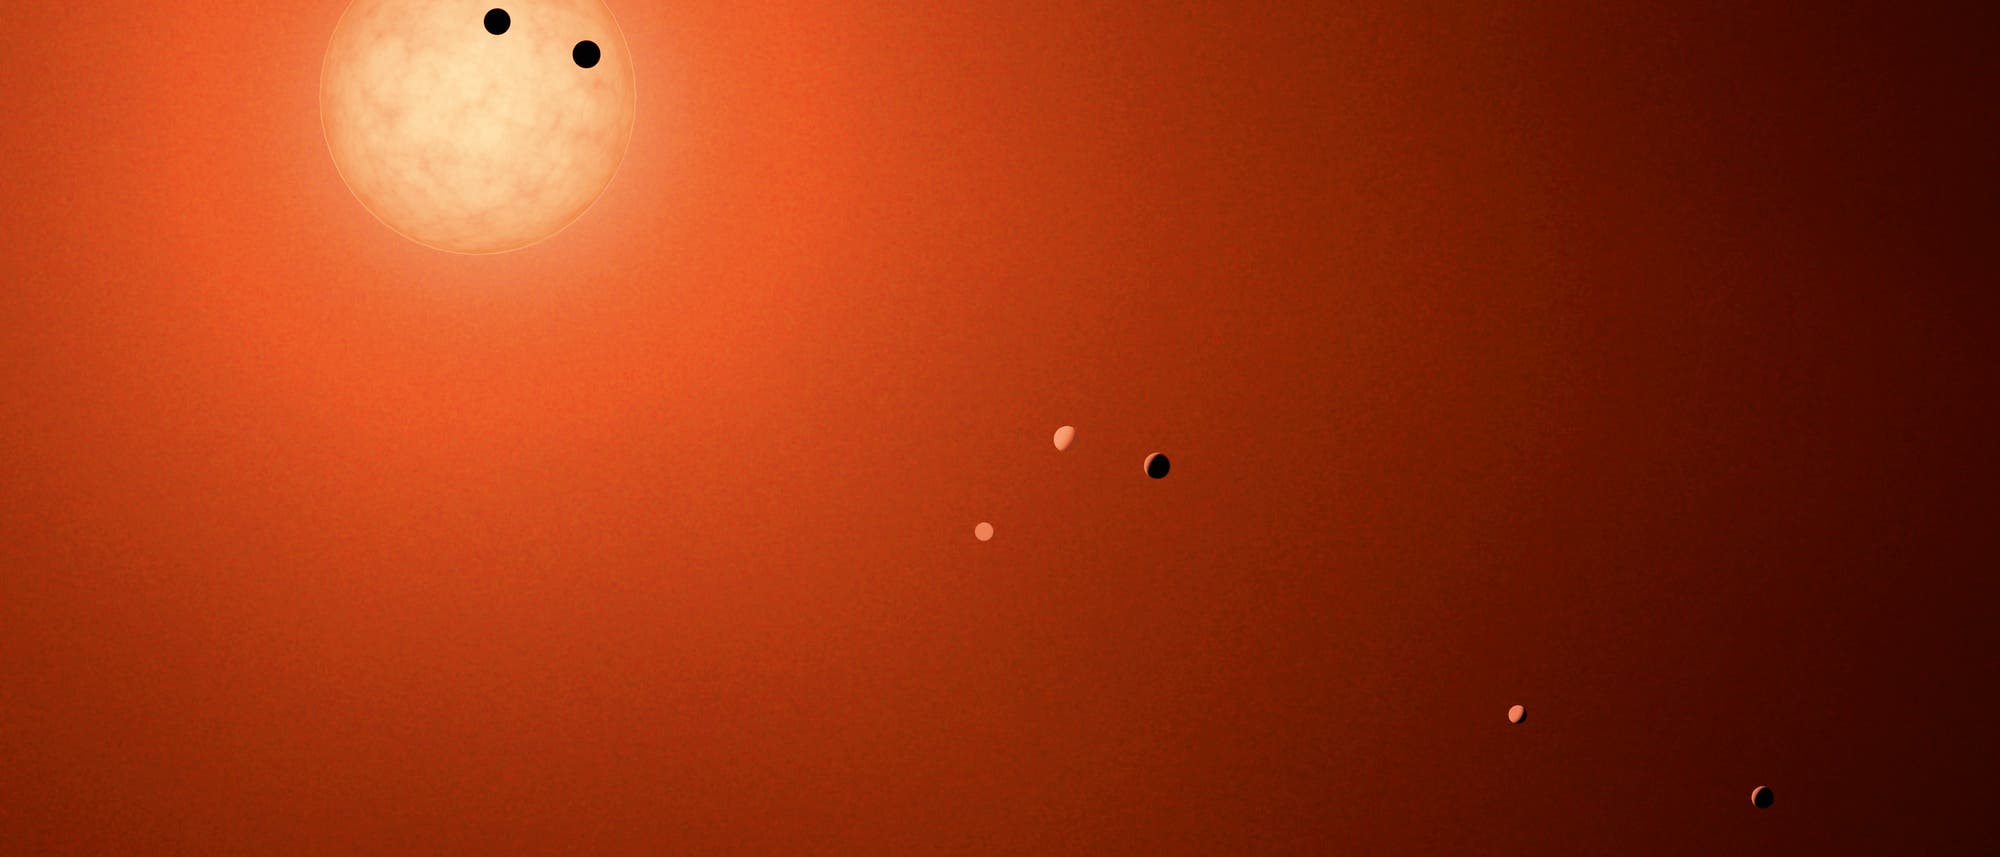 Der rund 40 Lichtjahre von uns entfernte rote Zwergstern TRAPPIST-1 im Sternbild Wassermann wird von sieben Planeten mit annähernder Erdgröße umrundet.